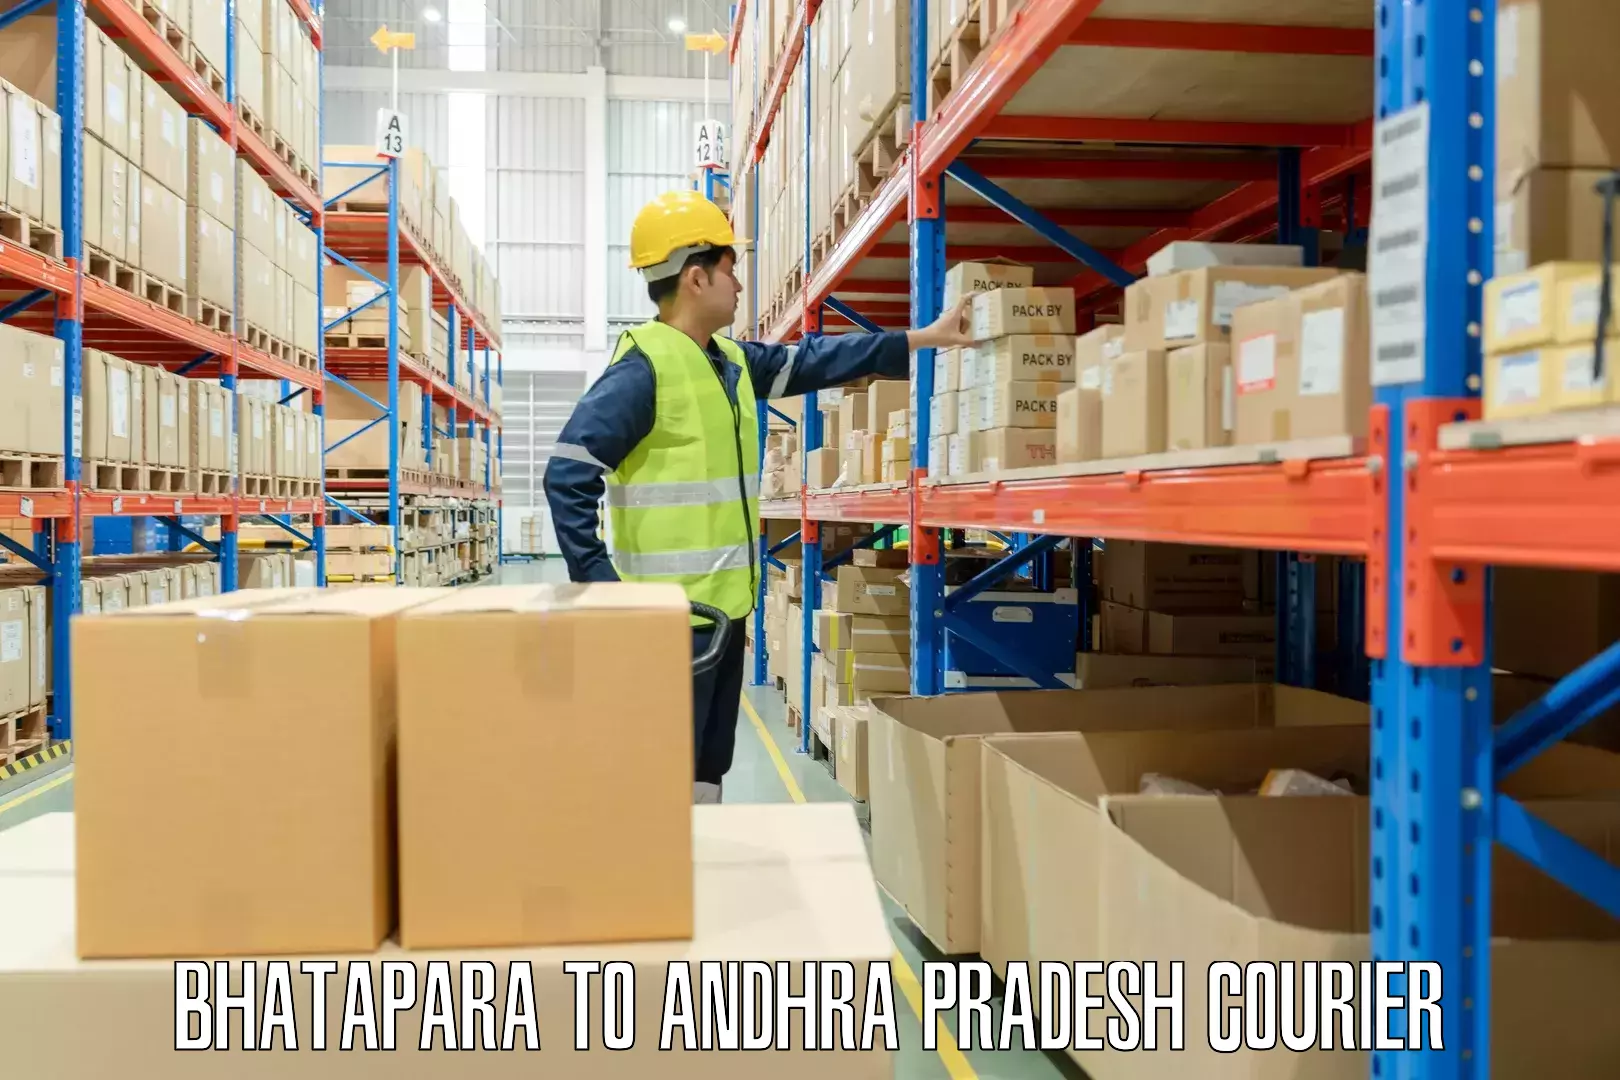 Luggage transport company Bhatapara to Andhra Pradesh